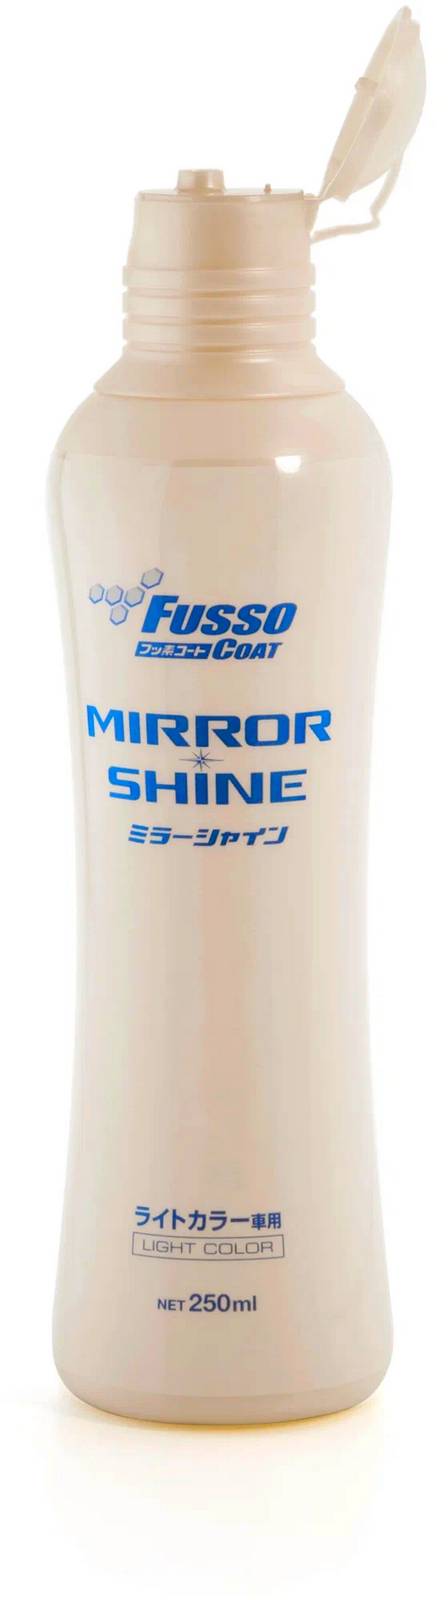 Присадки / Автохимия Полироль для кузова для усиления блеска Soft99 Fusso Mirror Shine 9 Month для светлых